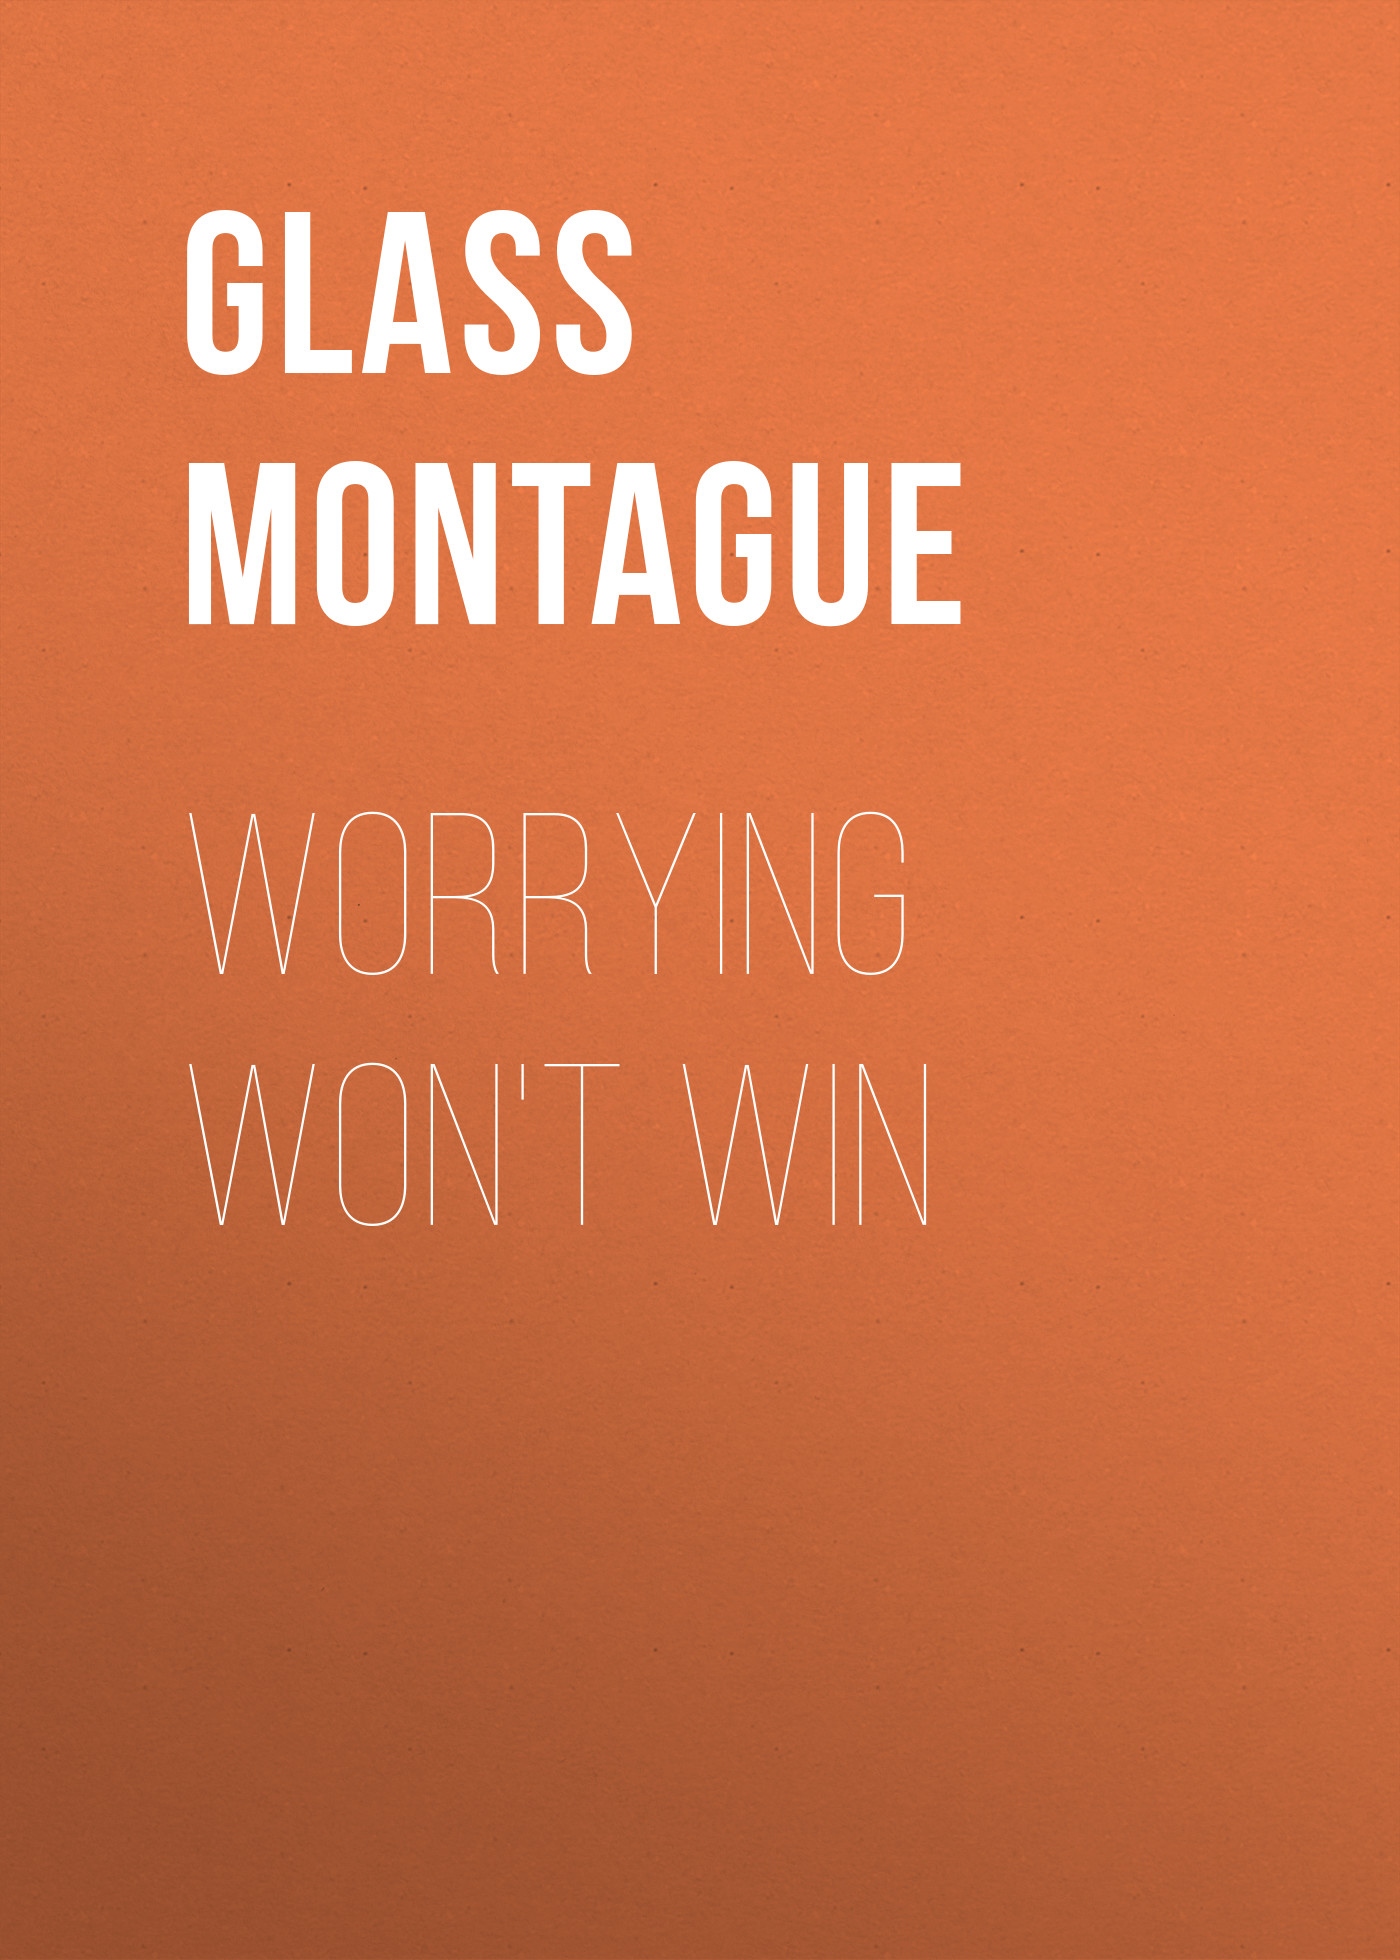 Книга Worrying Won't Win из серии , созданная Montague Glass, может относится к жанру История, Зарубежная старинная литература, Зарубежная классика. Стоимость книги Worrying Won't Win  с идентификатором 24936725 составляет 0 руб.